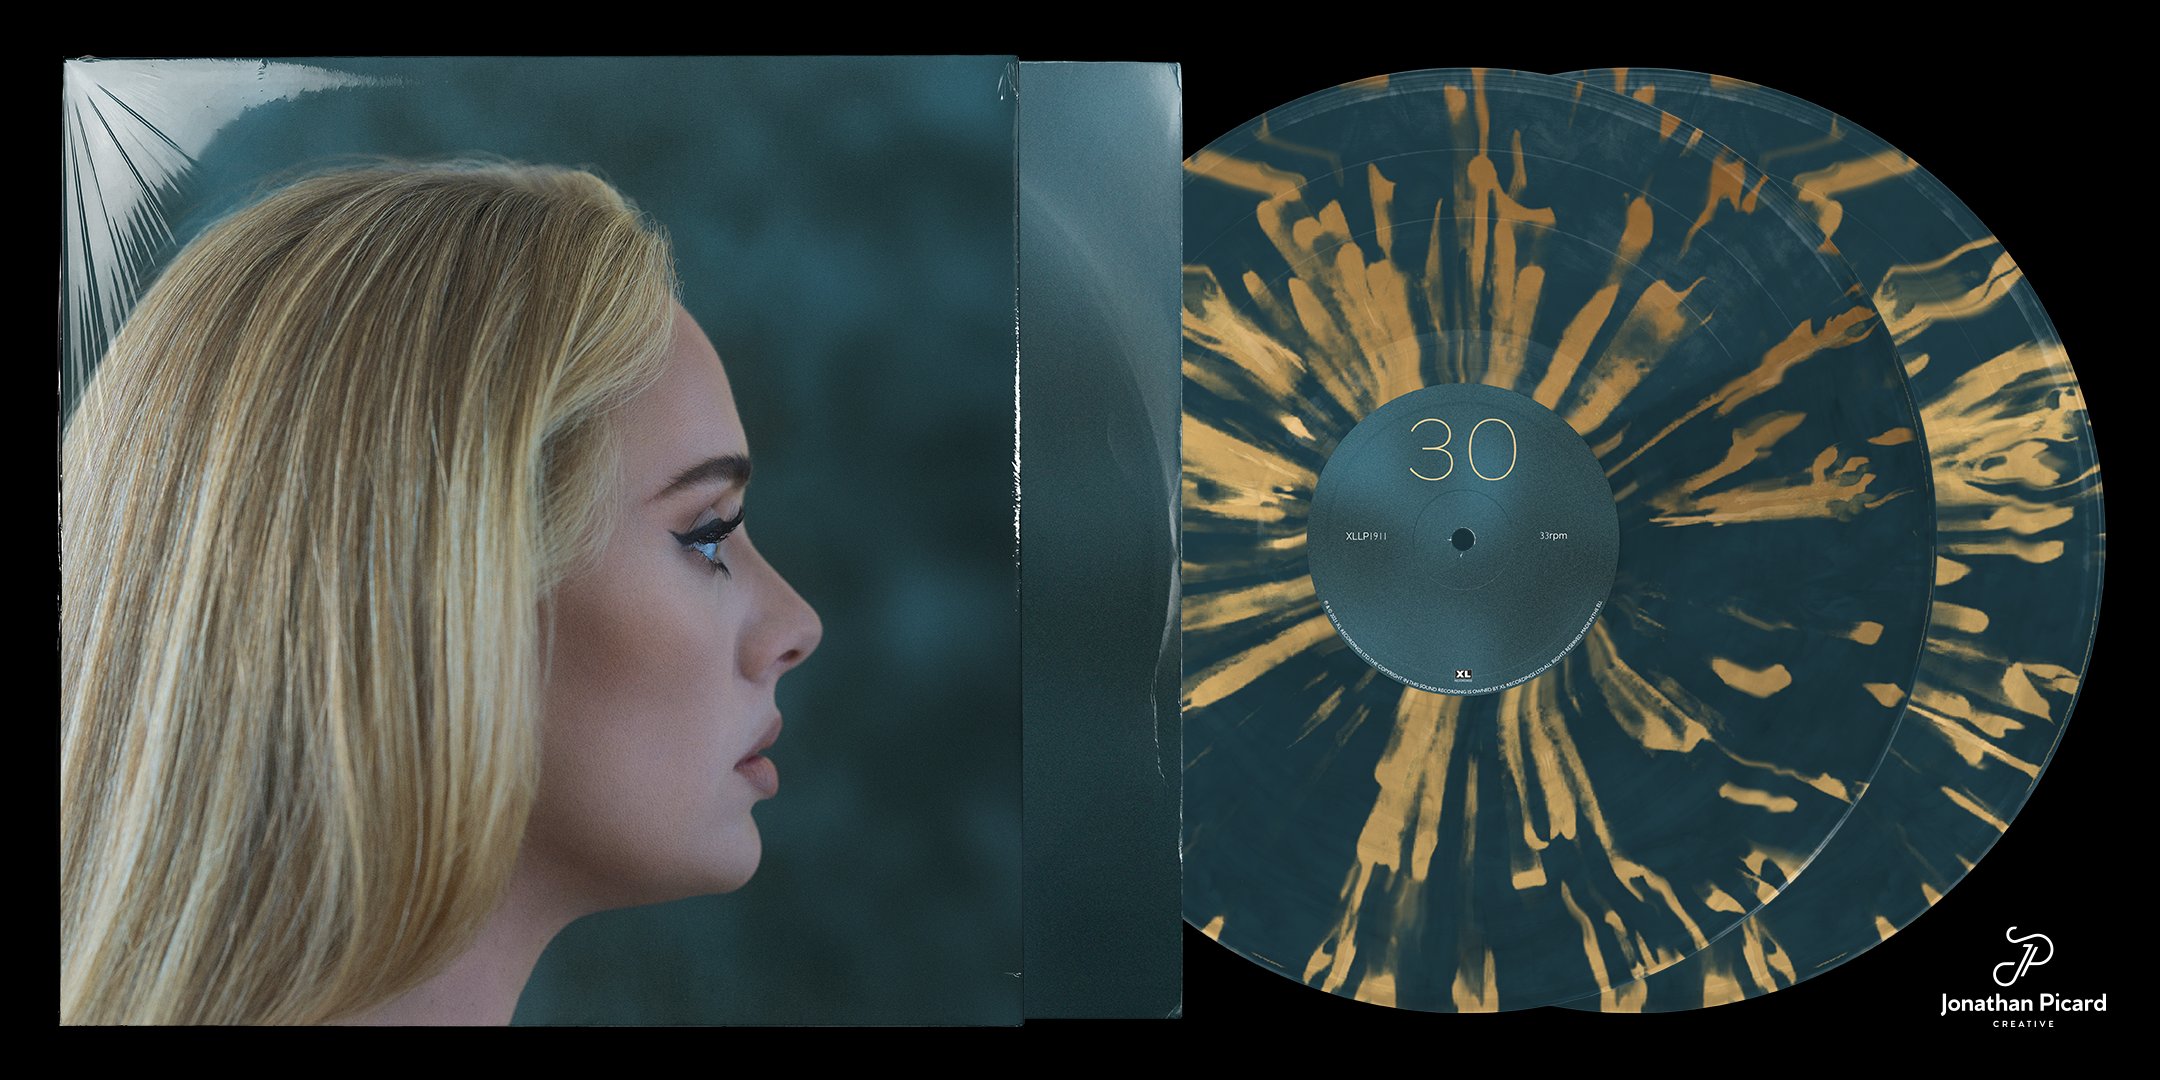 The Infamous Jonathan on X: Adele, 30 vinyl album concept. 🤍 @Adele   / X